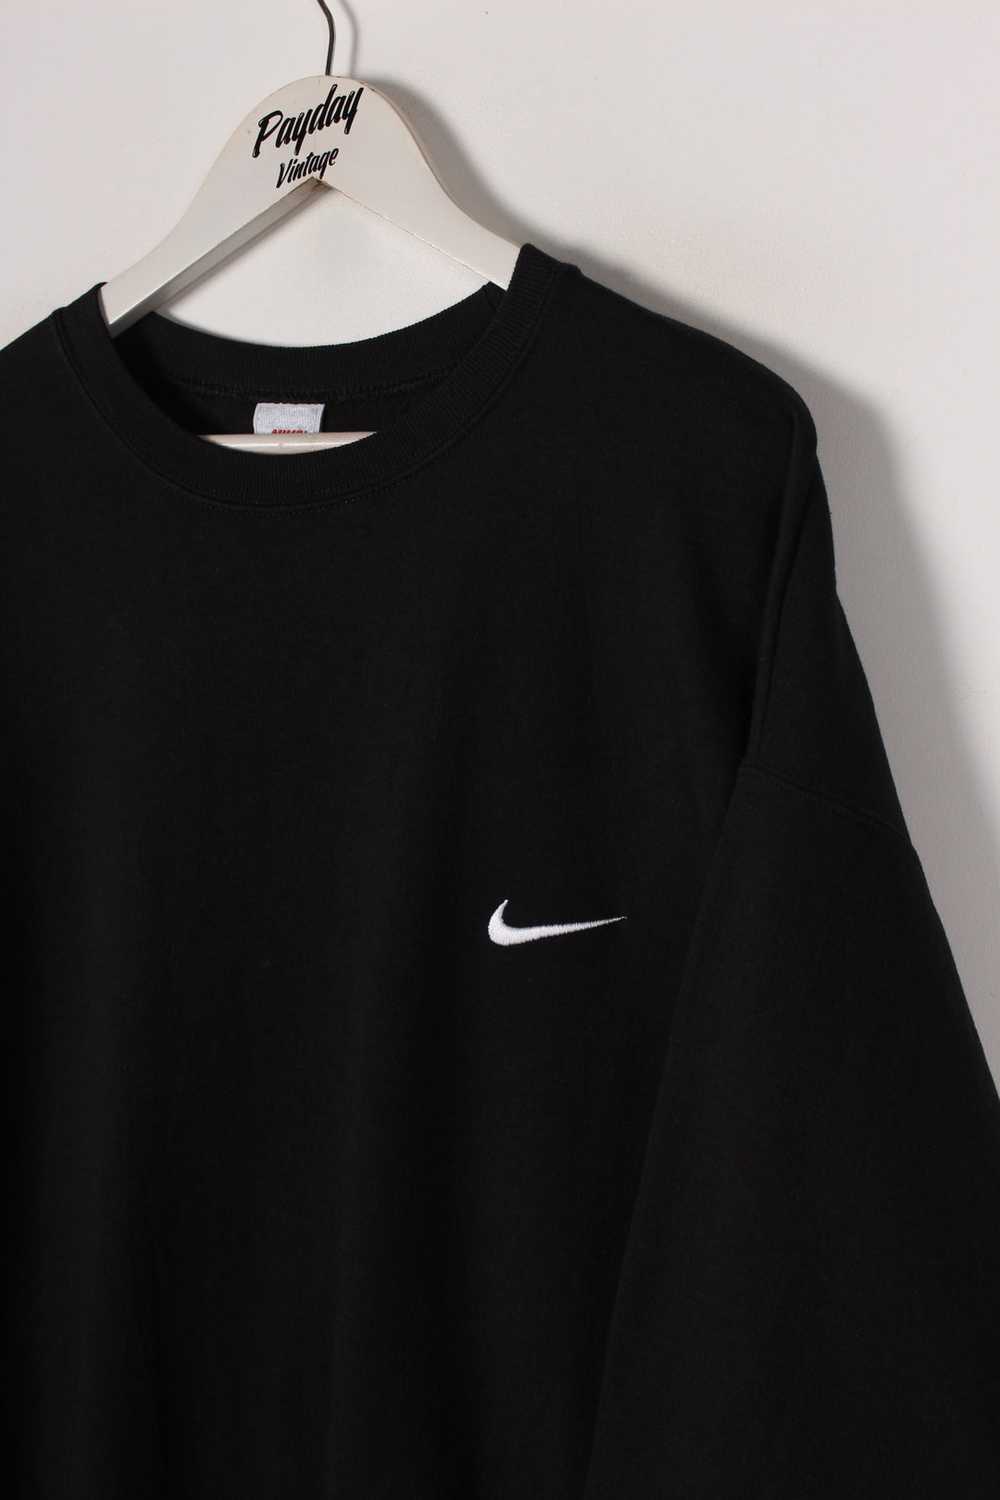 90's Nike Sweatshirt Large - image 2